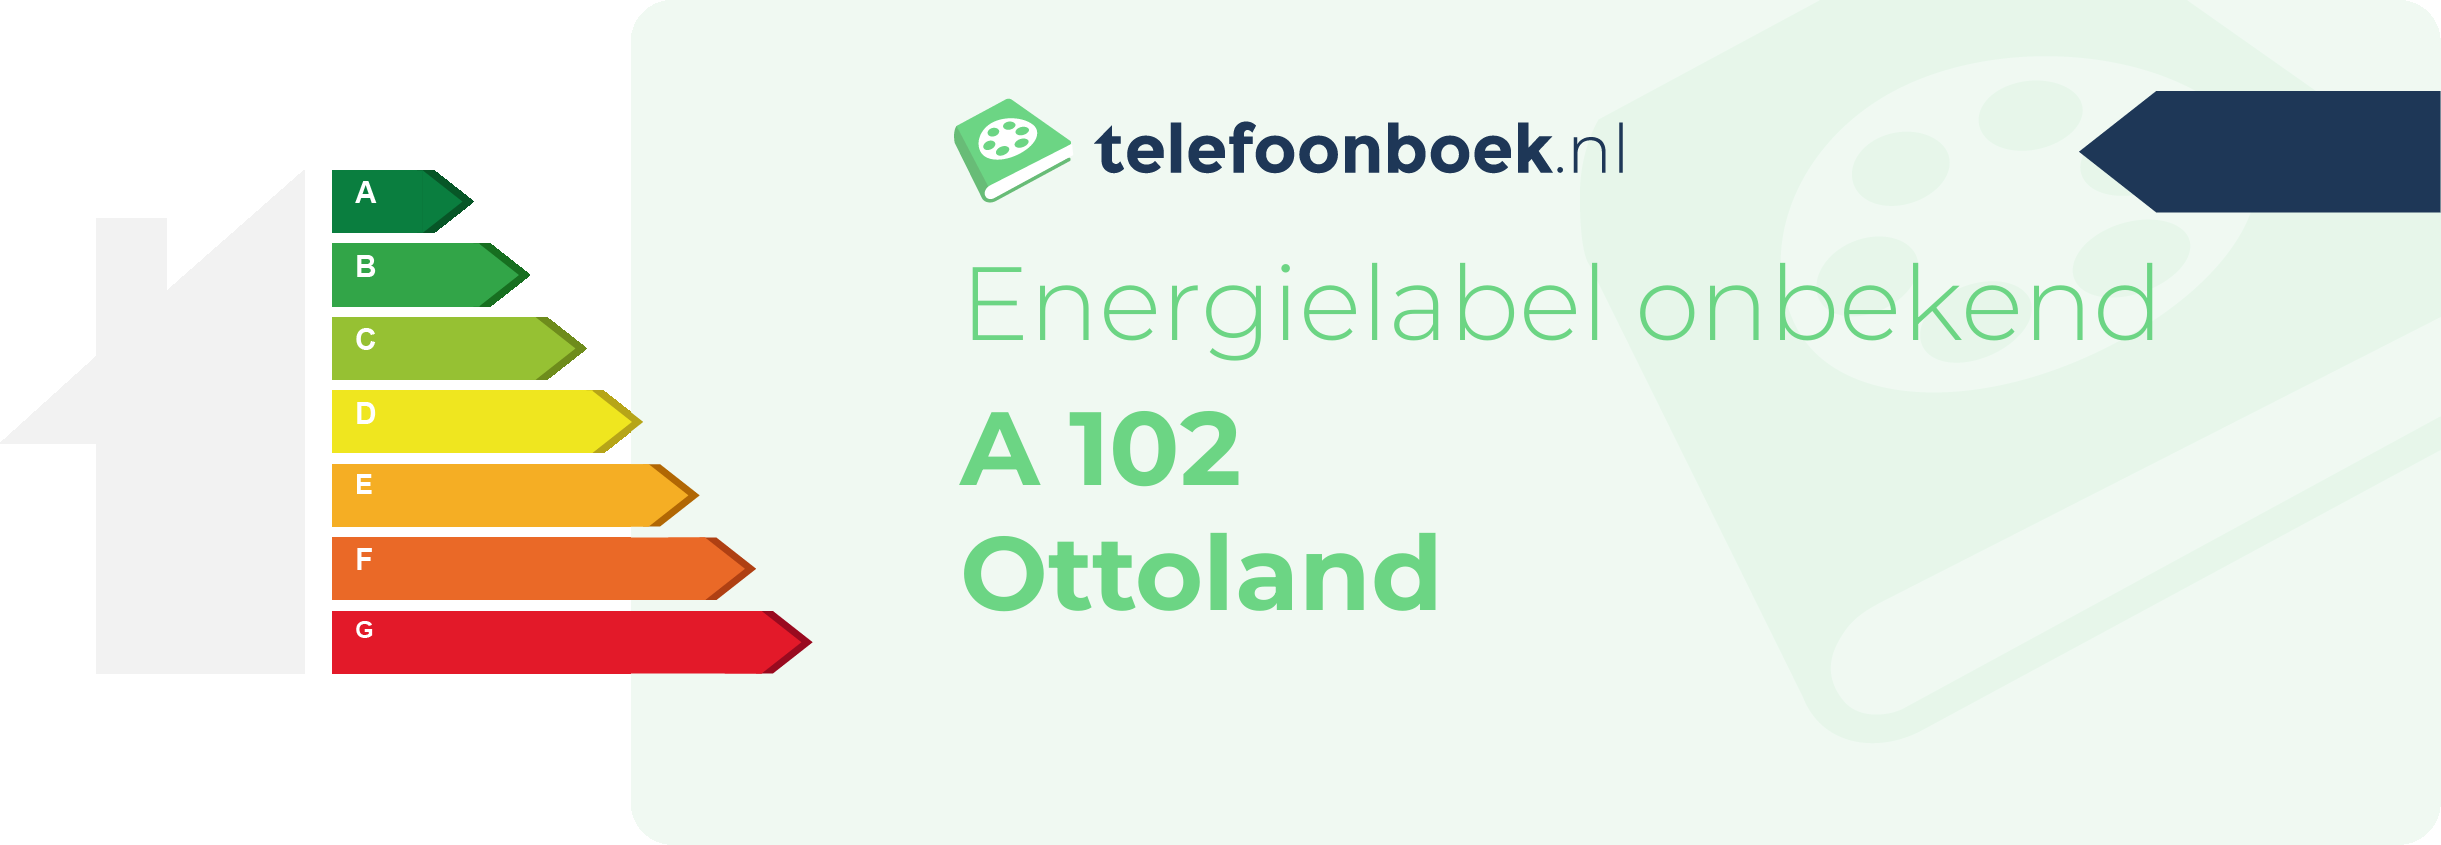 Energielabel A 102 Ottoland